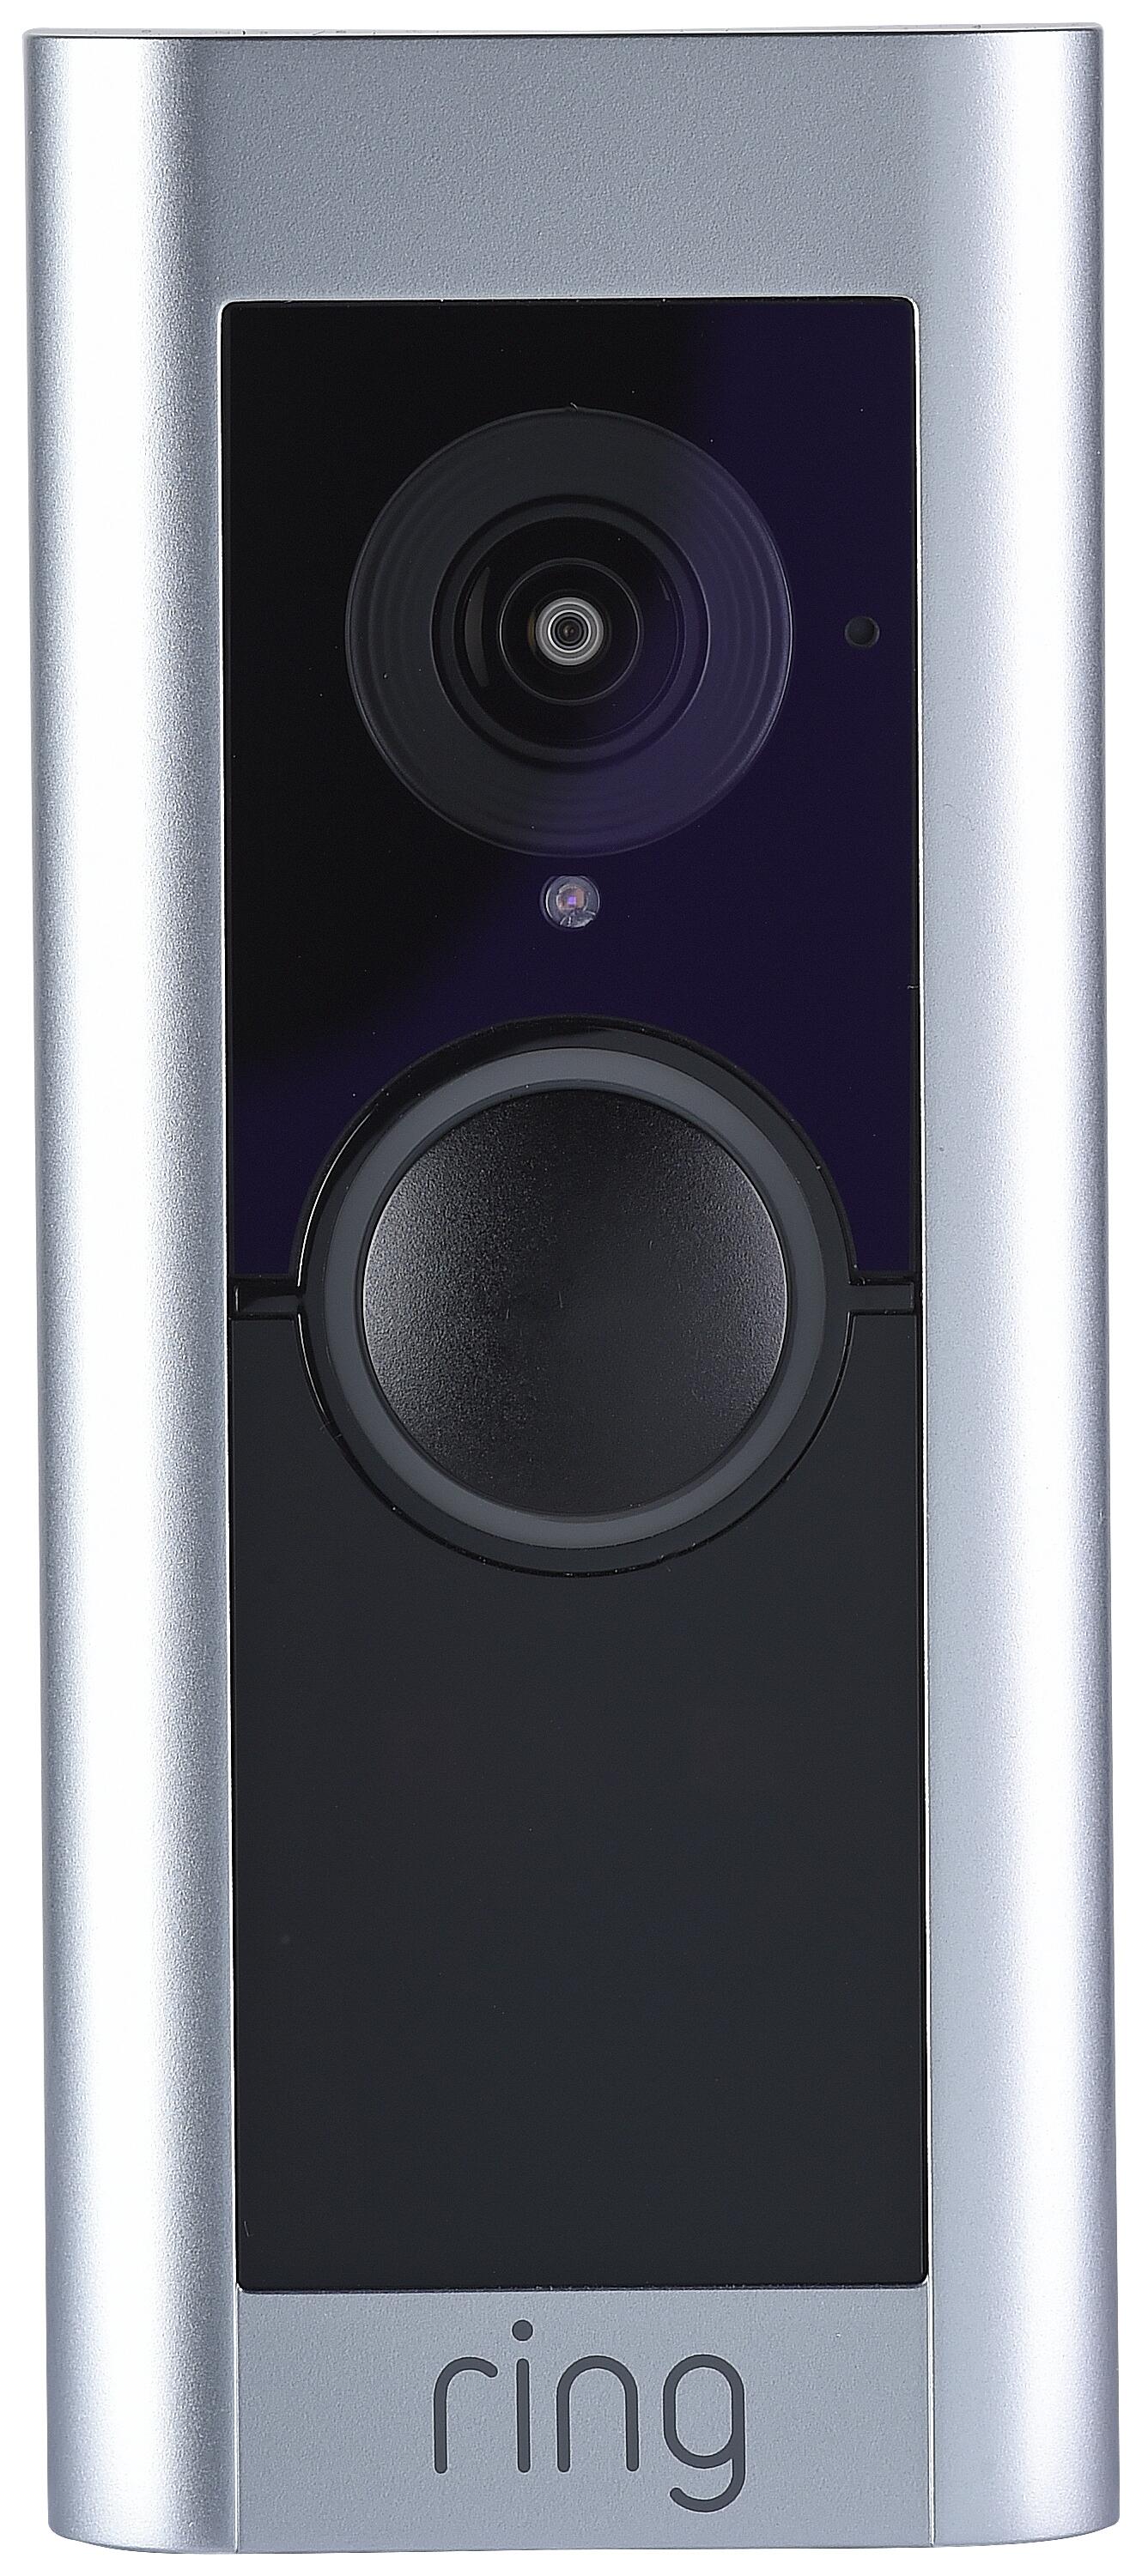 Video Doorbell Pro 2 Ring